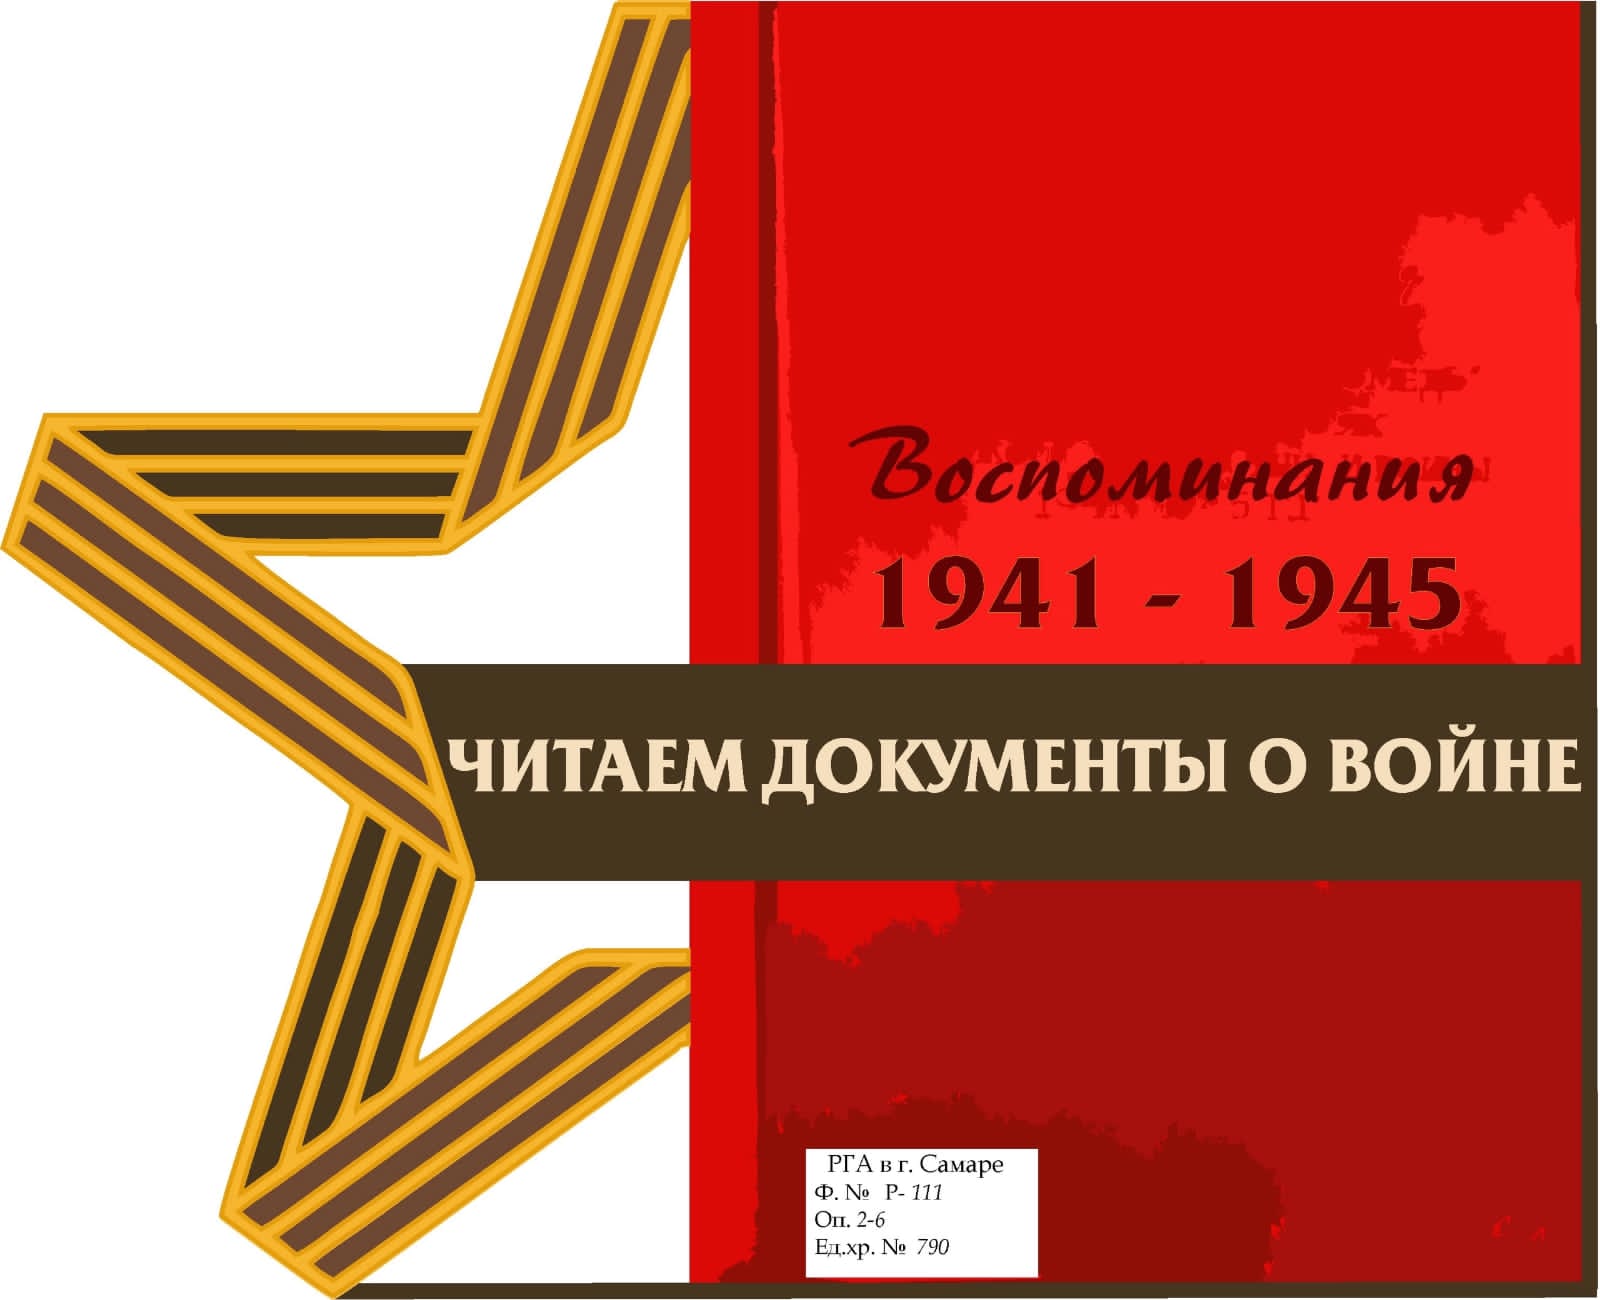 Государственный архив Кузбасса принял участие в сетевой акции  #Читаем Документы о Войне 